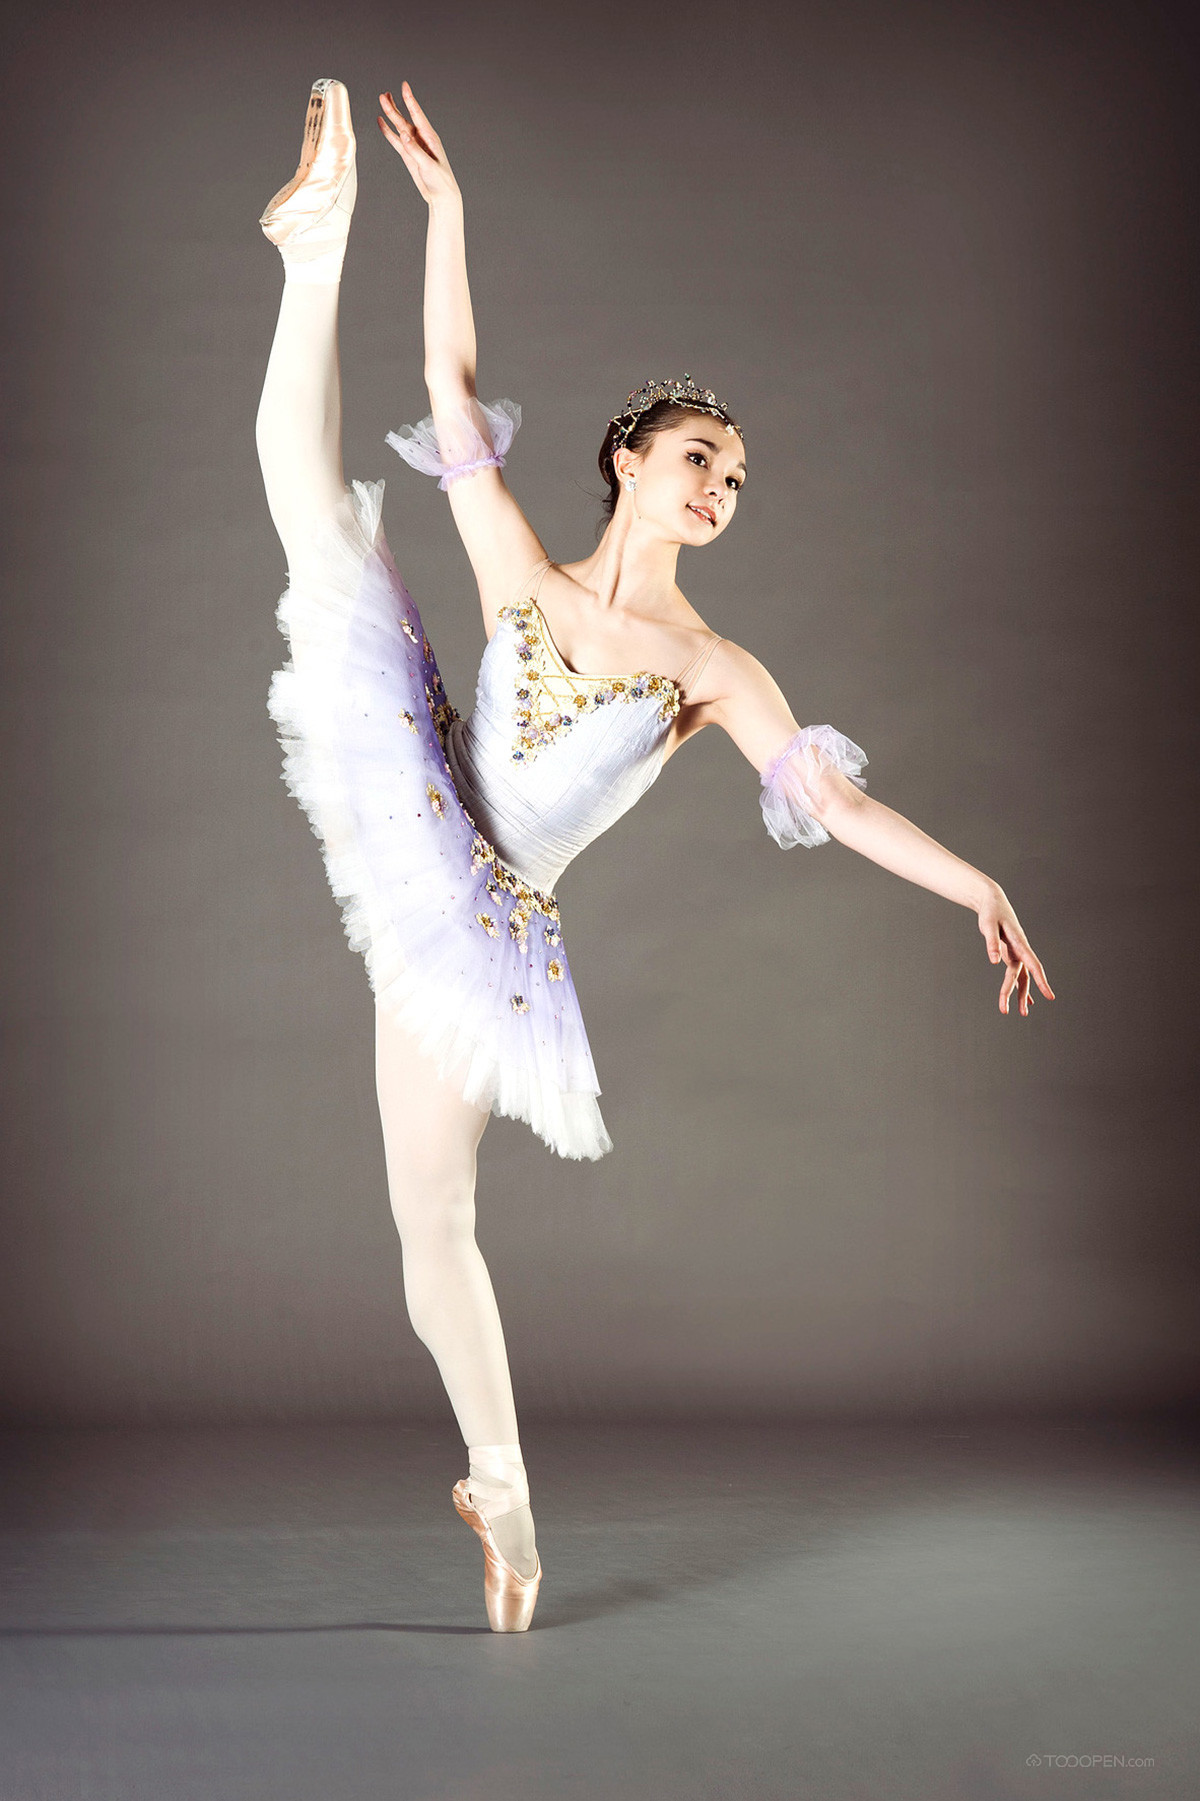 舞蹈之美-现代芭蕾舞艺术摄影作品欣赏